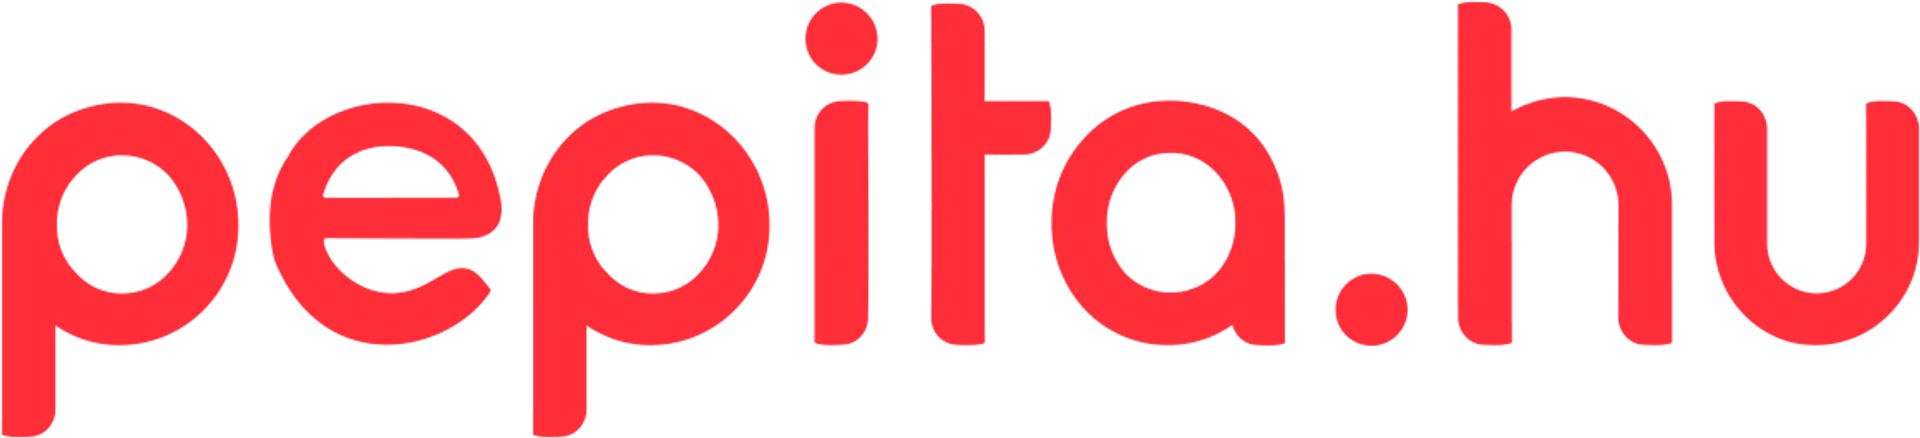 PEPITA logo